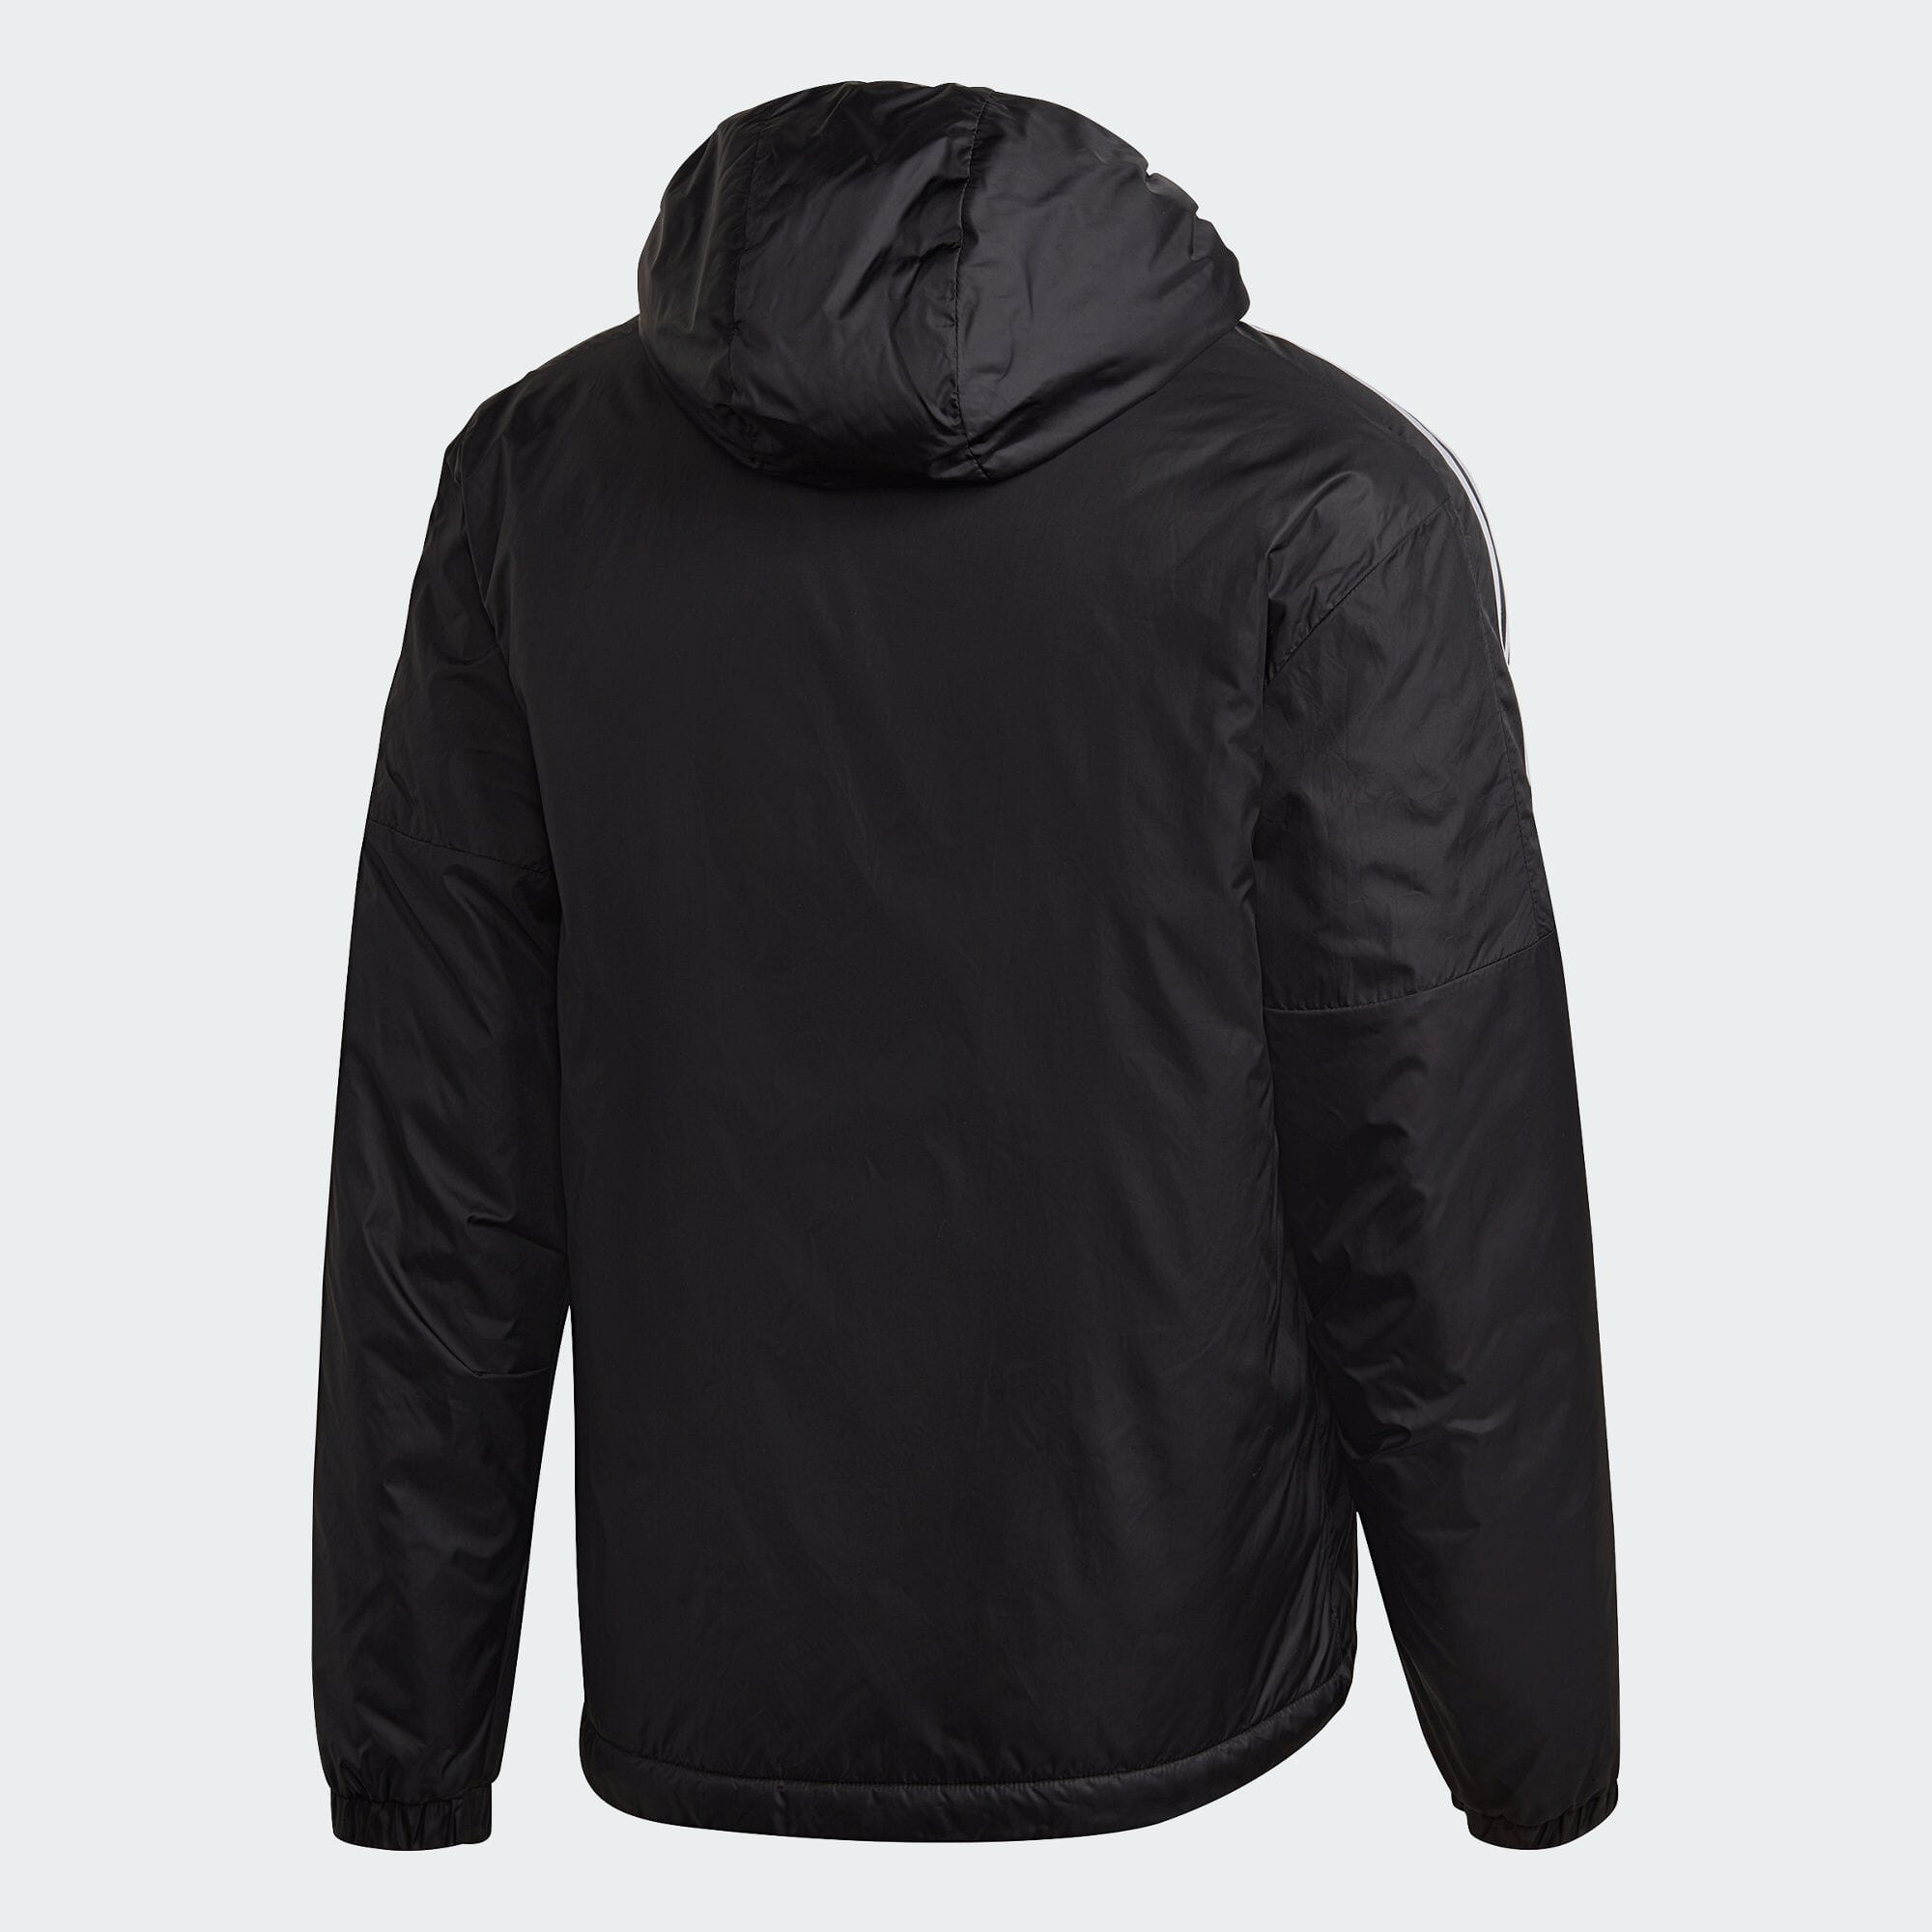 エッセンシャルズ インサレーテッド フード付きジャケット / Essentials Insulated Hooded Jacket メンズ  スポーツウェア